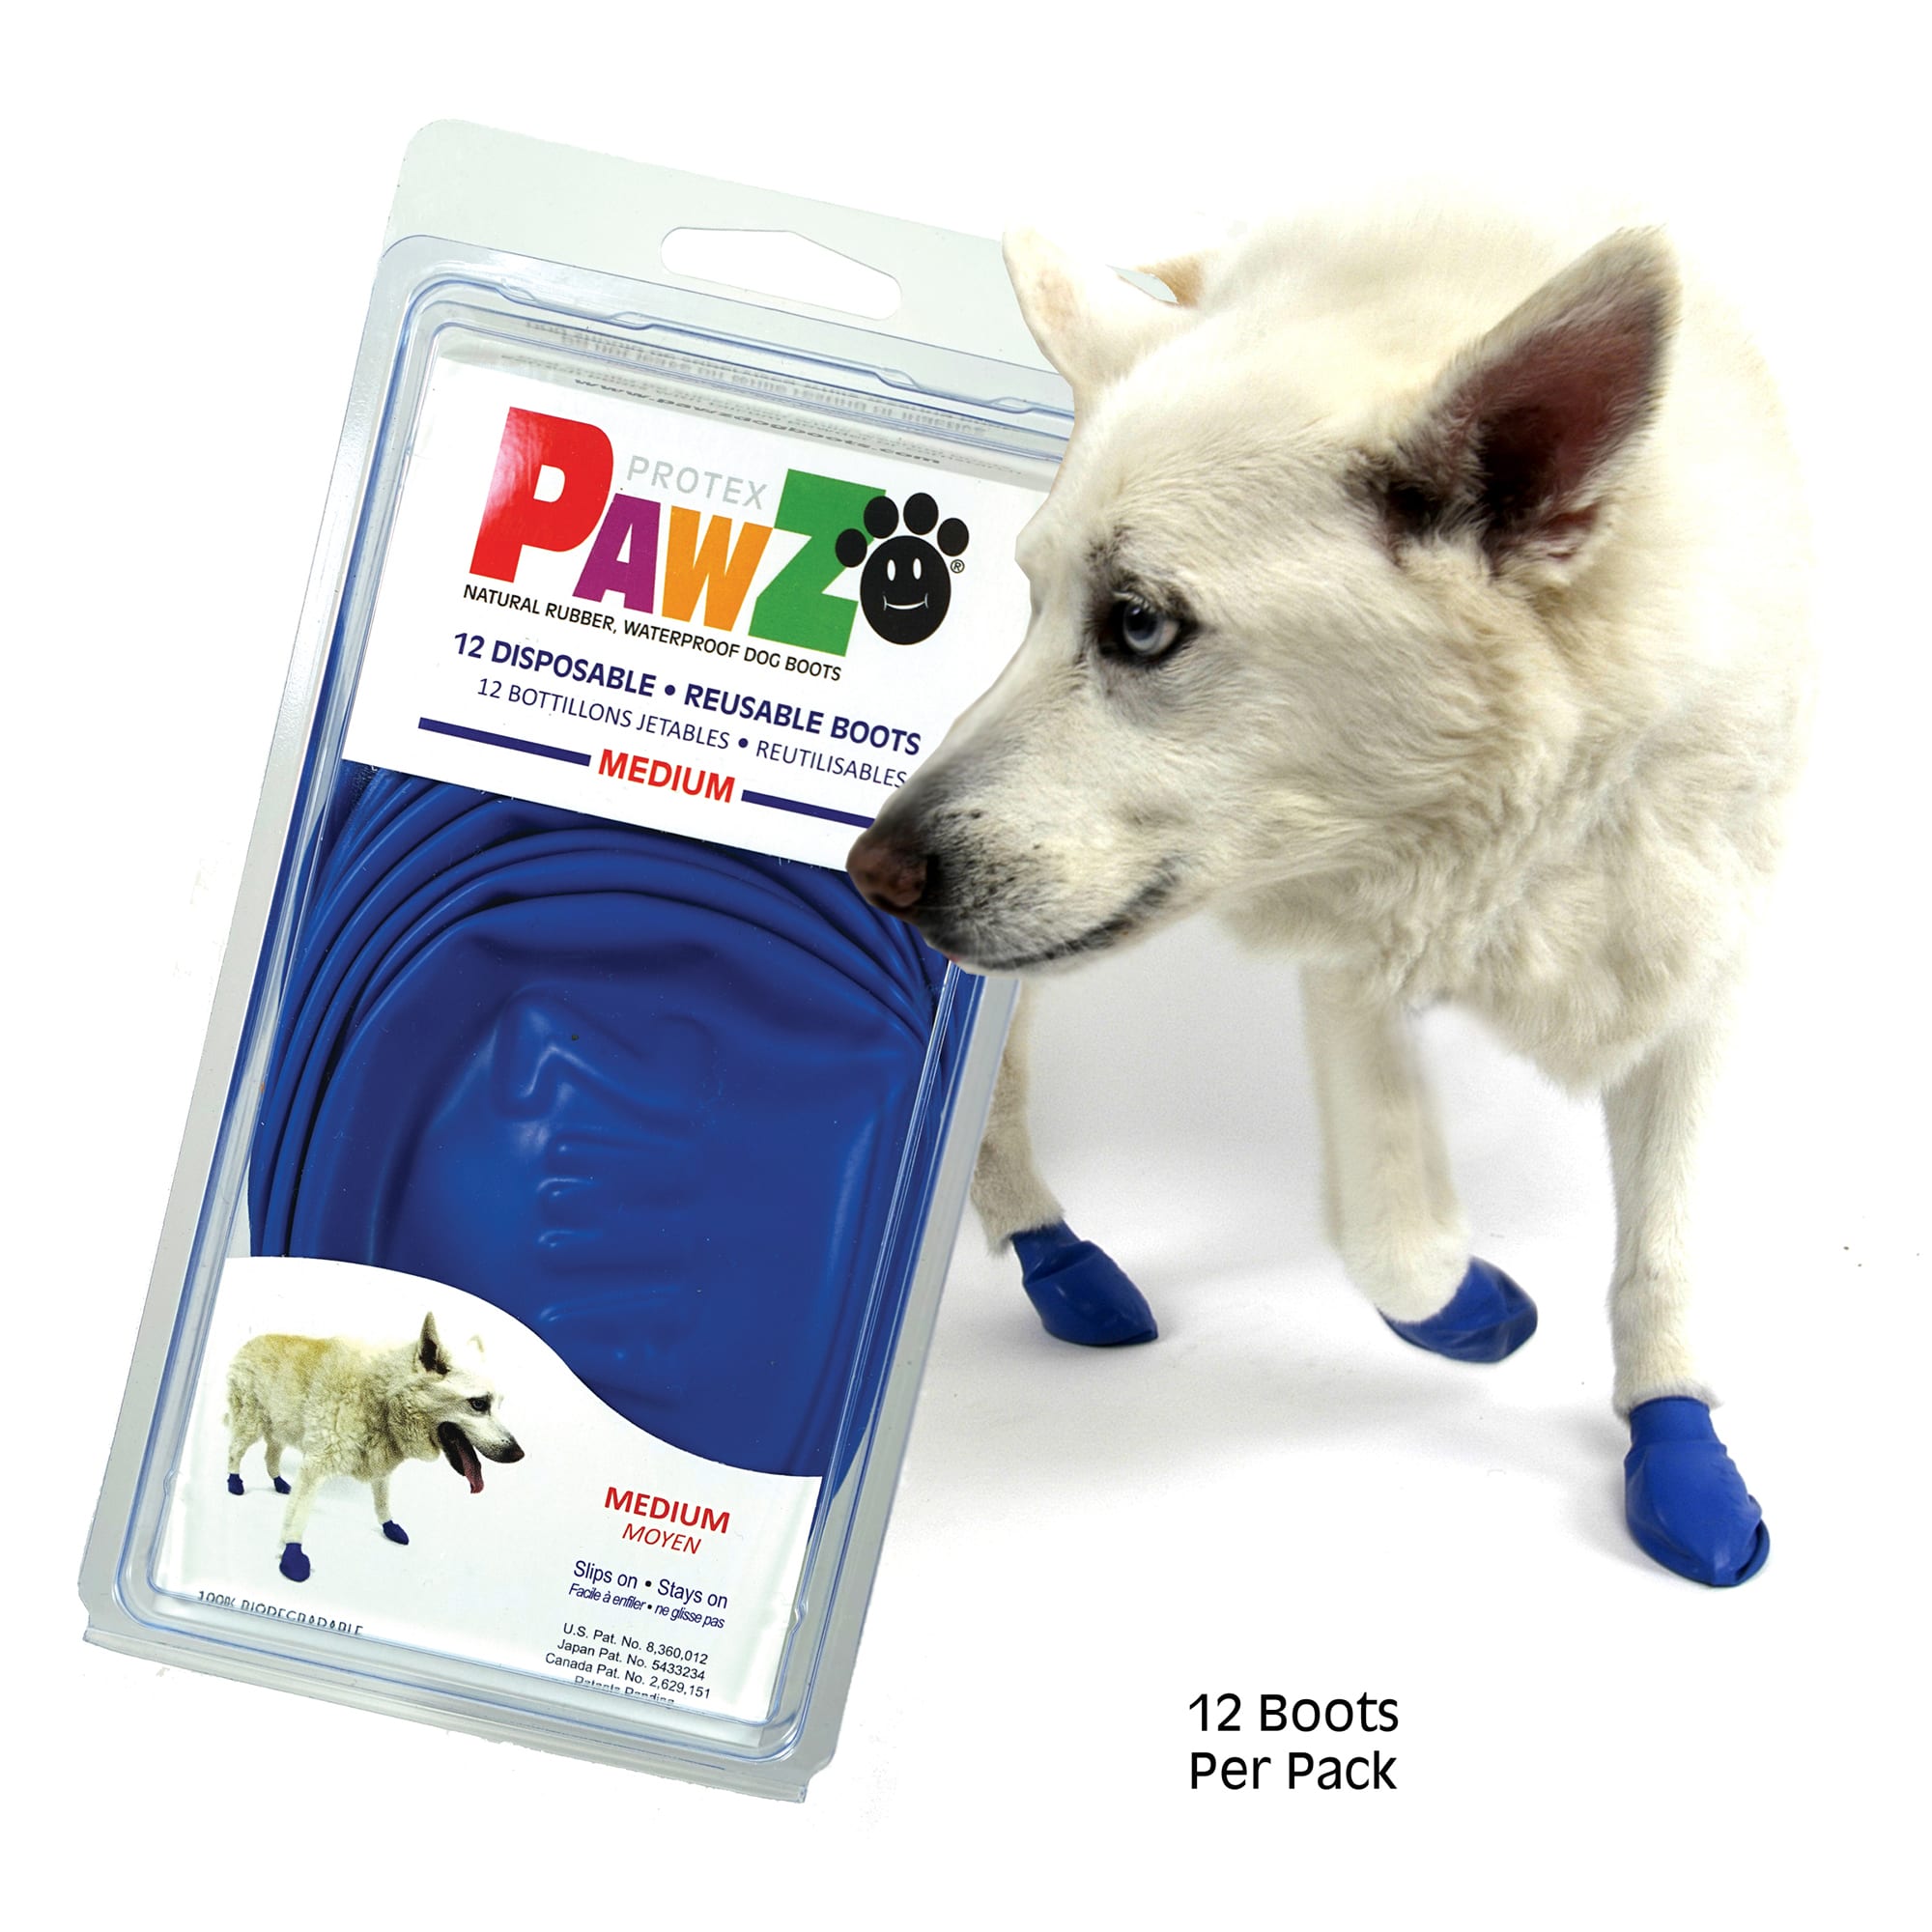 Photos - Dog Clothing PAWZ PAWZ Rubber Dog Boots, Medium, Blue MEDIUM